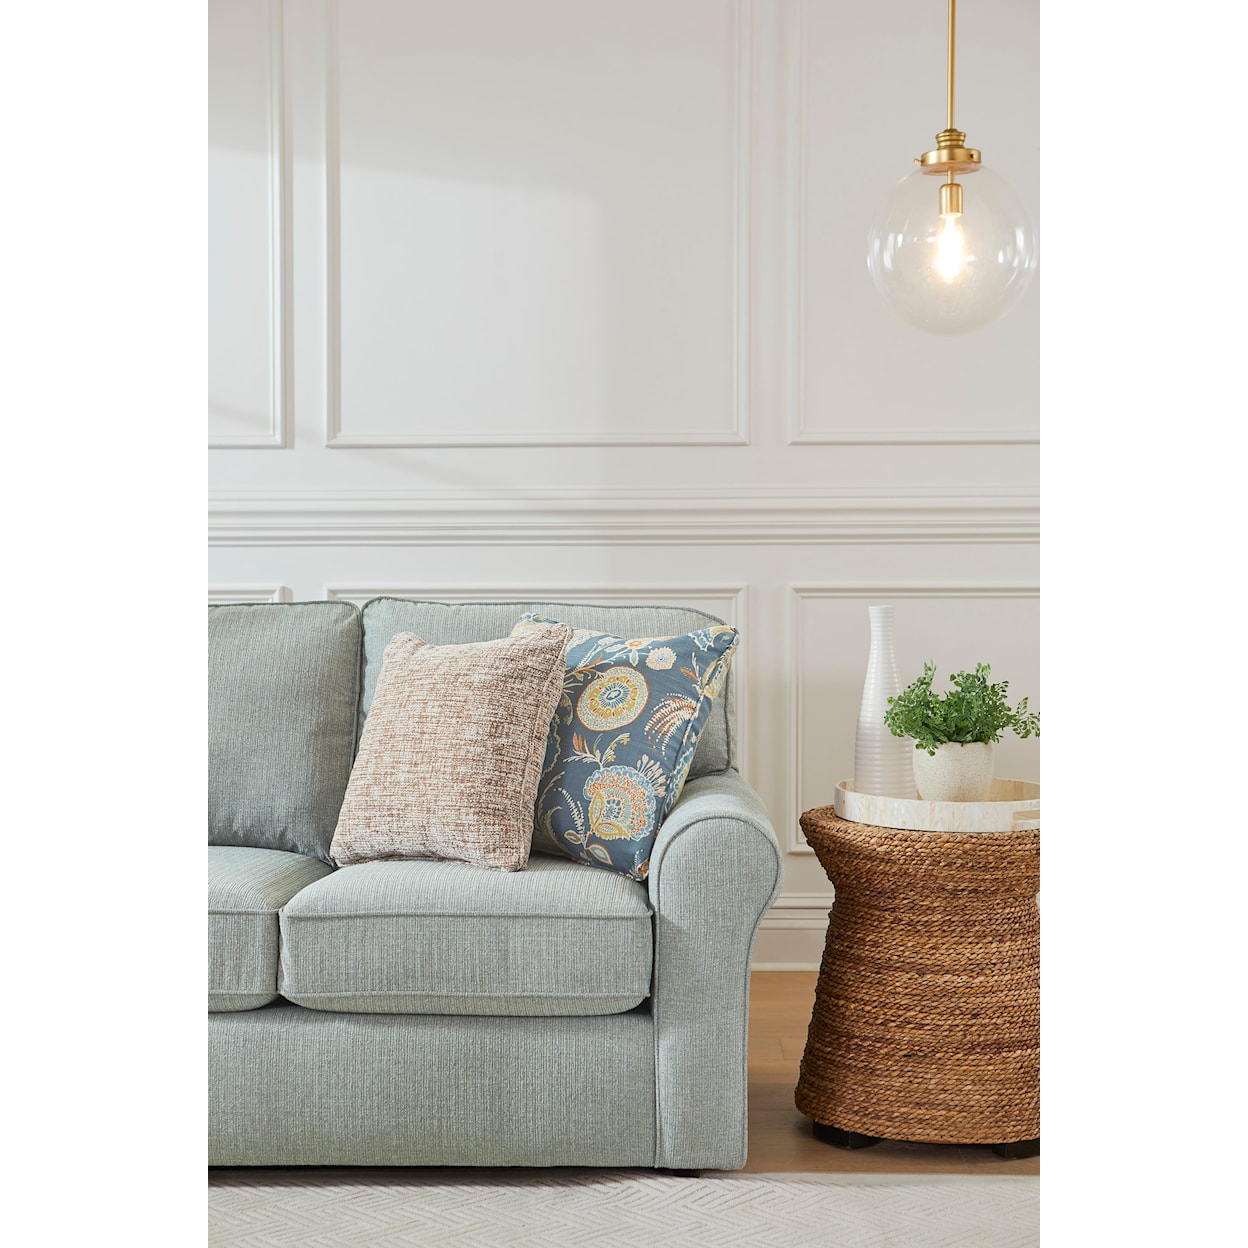 Best Home Furnishings Hanway Sofa